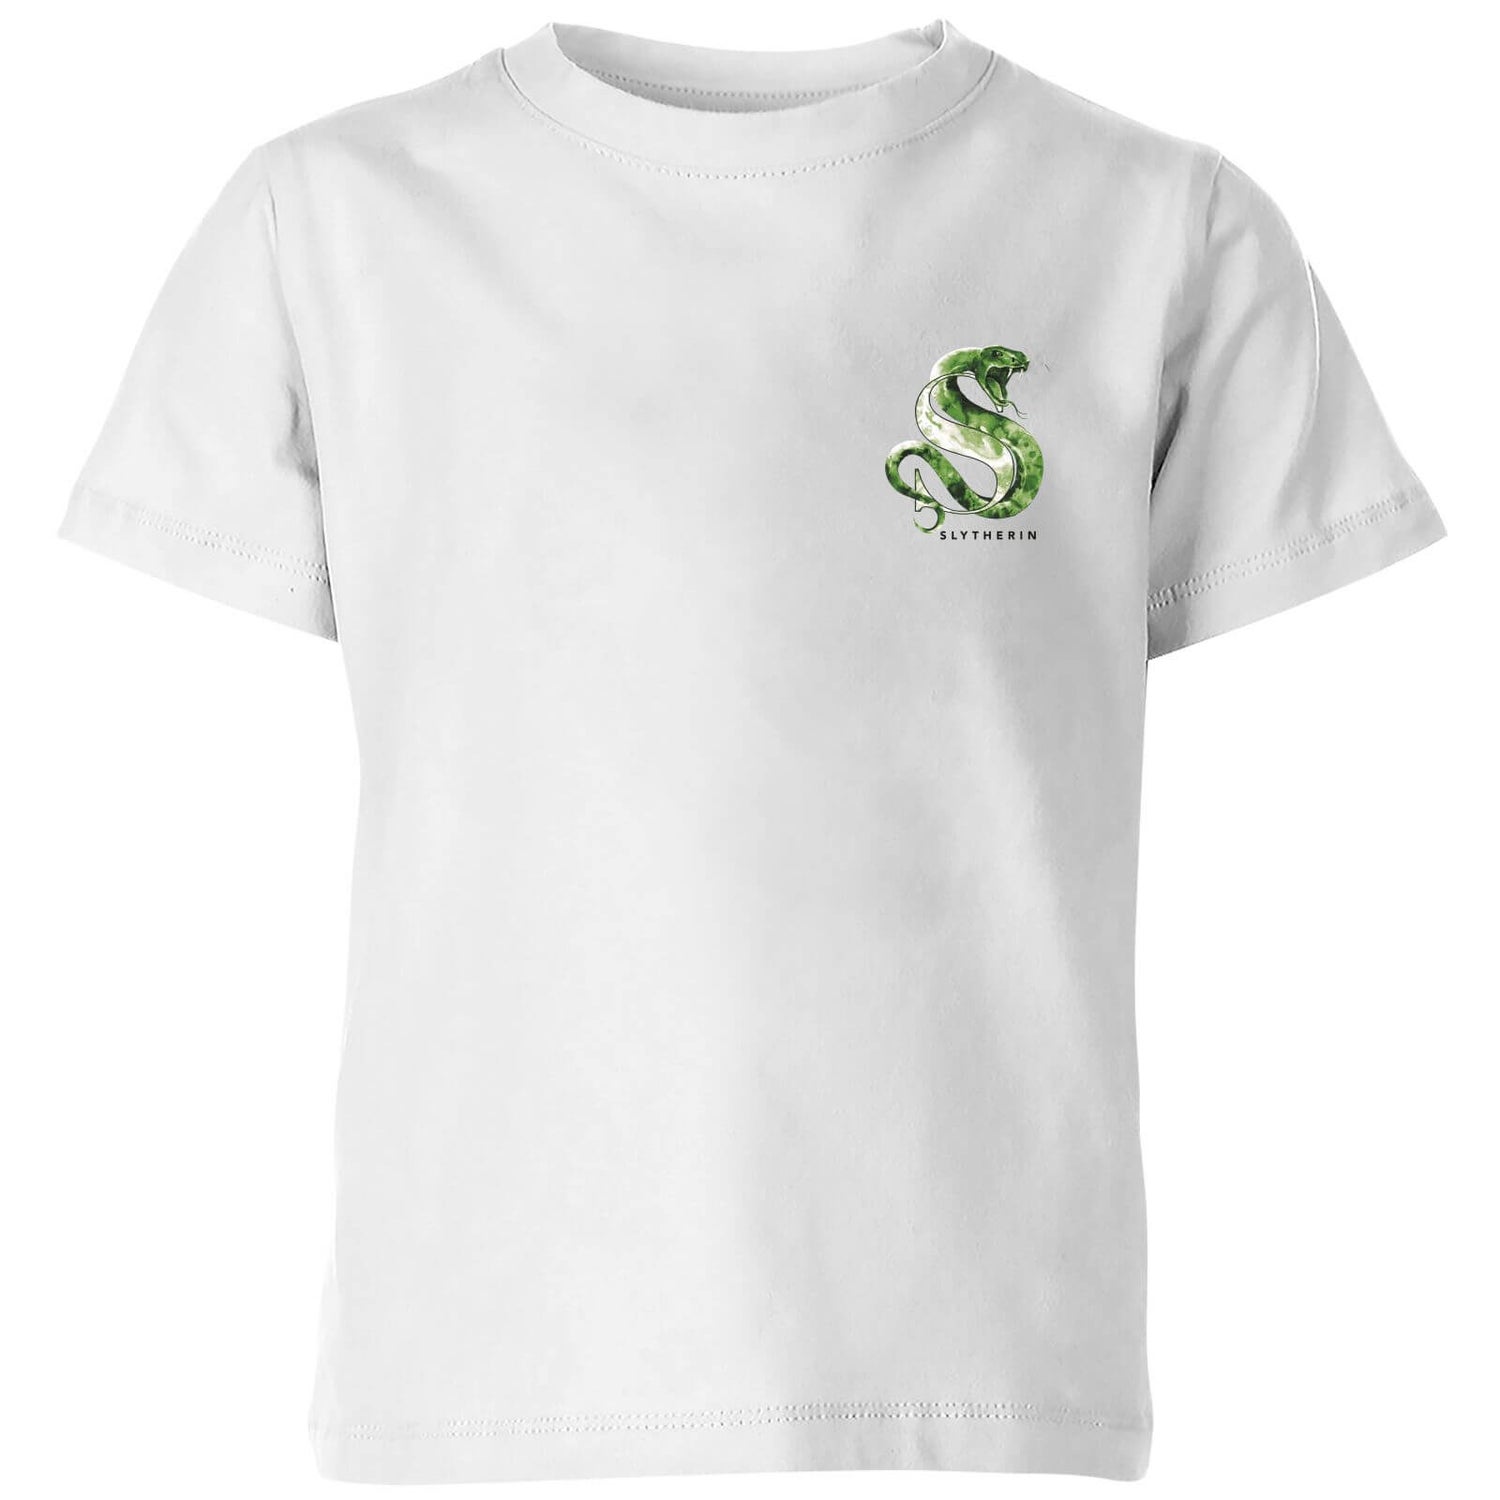 Harry Potter Slytherin Kids' T-Shirt - White